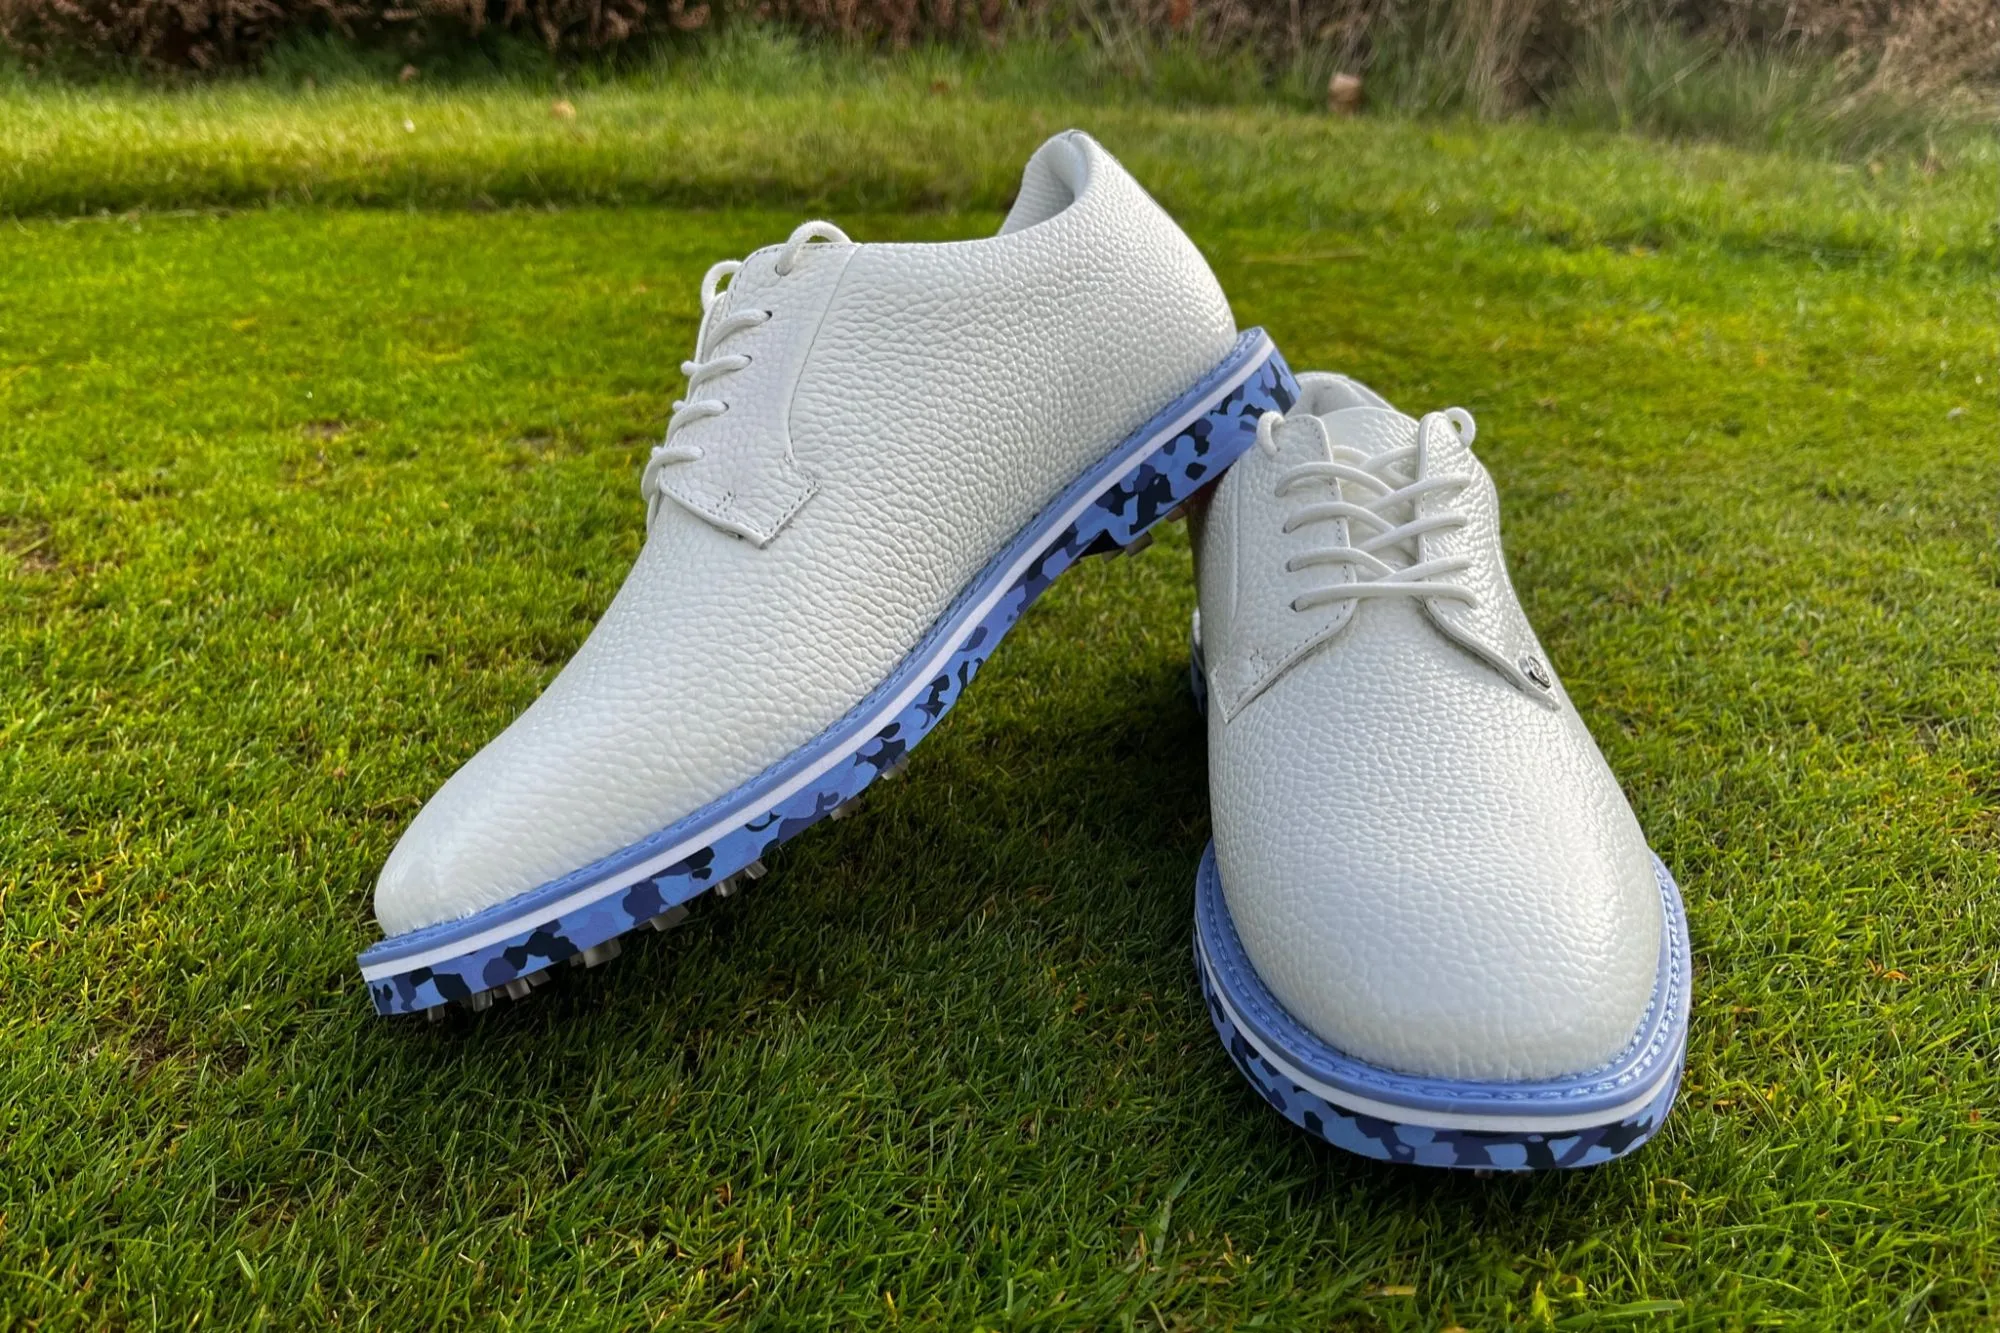 G Fore Camo Gallivanter Golf Shoes Review